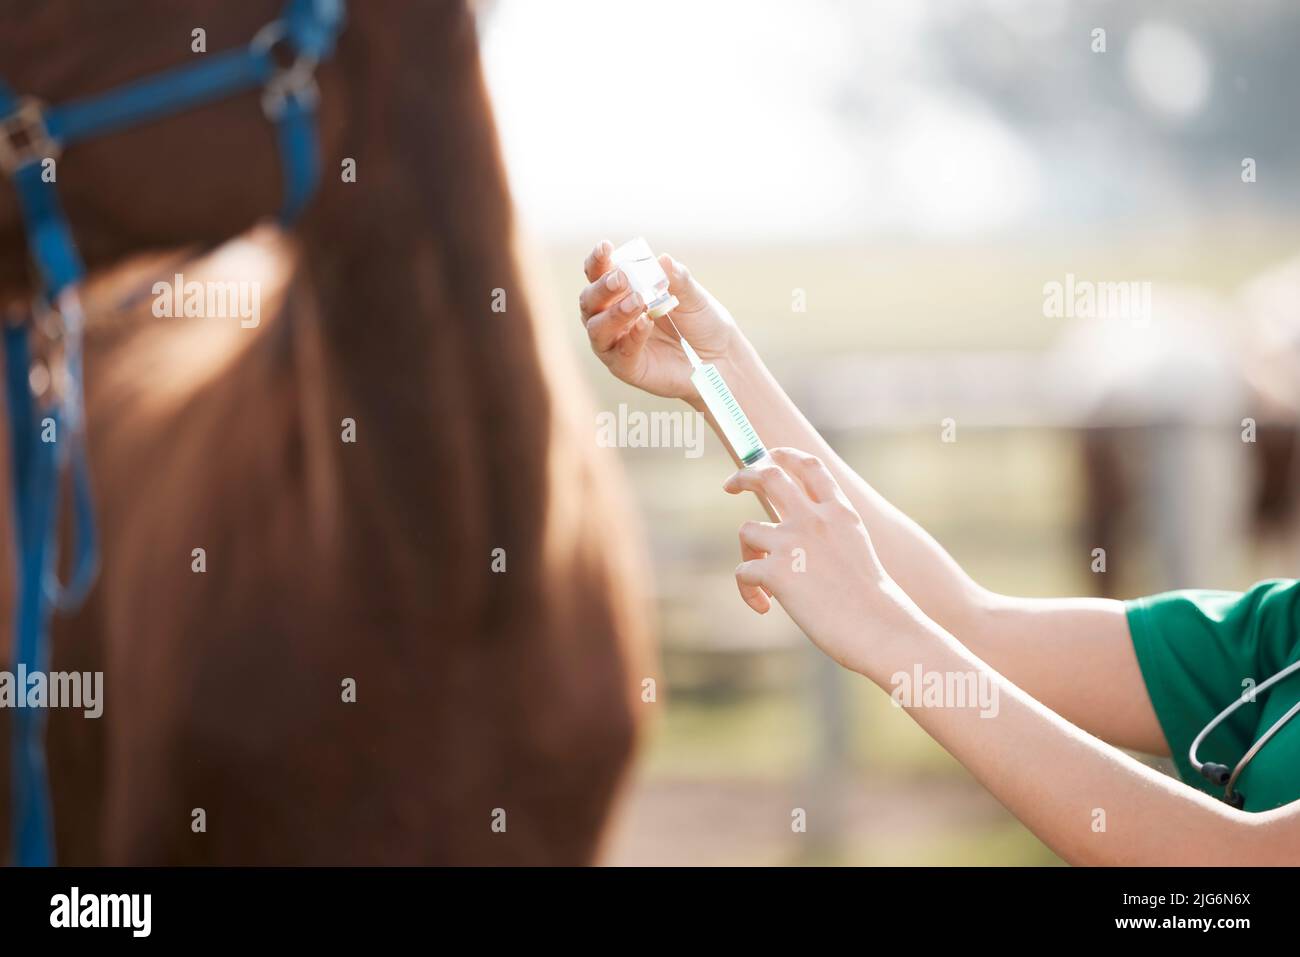 Nur deine normalen Aufnahmen. Ausgeschnittene Aufnahme eines nicht erkennbaren Tierarztes, der allein steht und sich darauf vorbereitet, einem Pferd eine Injektion auf einem Bauernhof zu verabreichen. Stockfoto